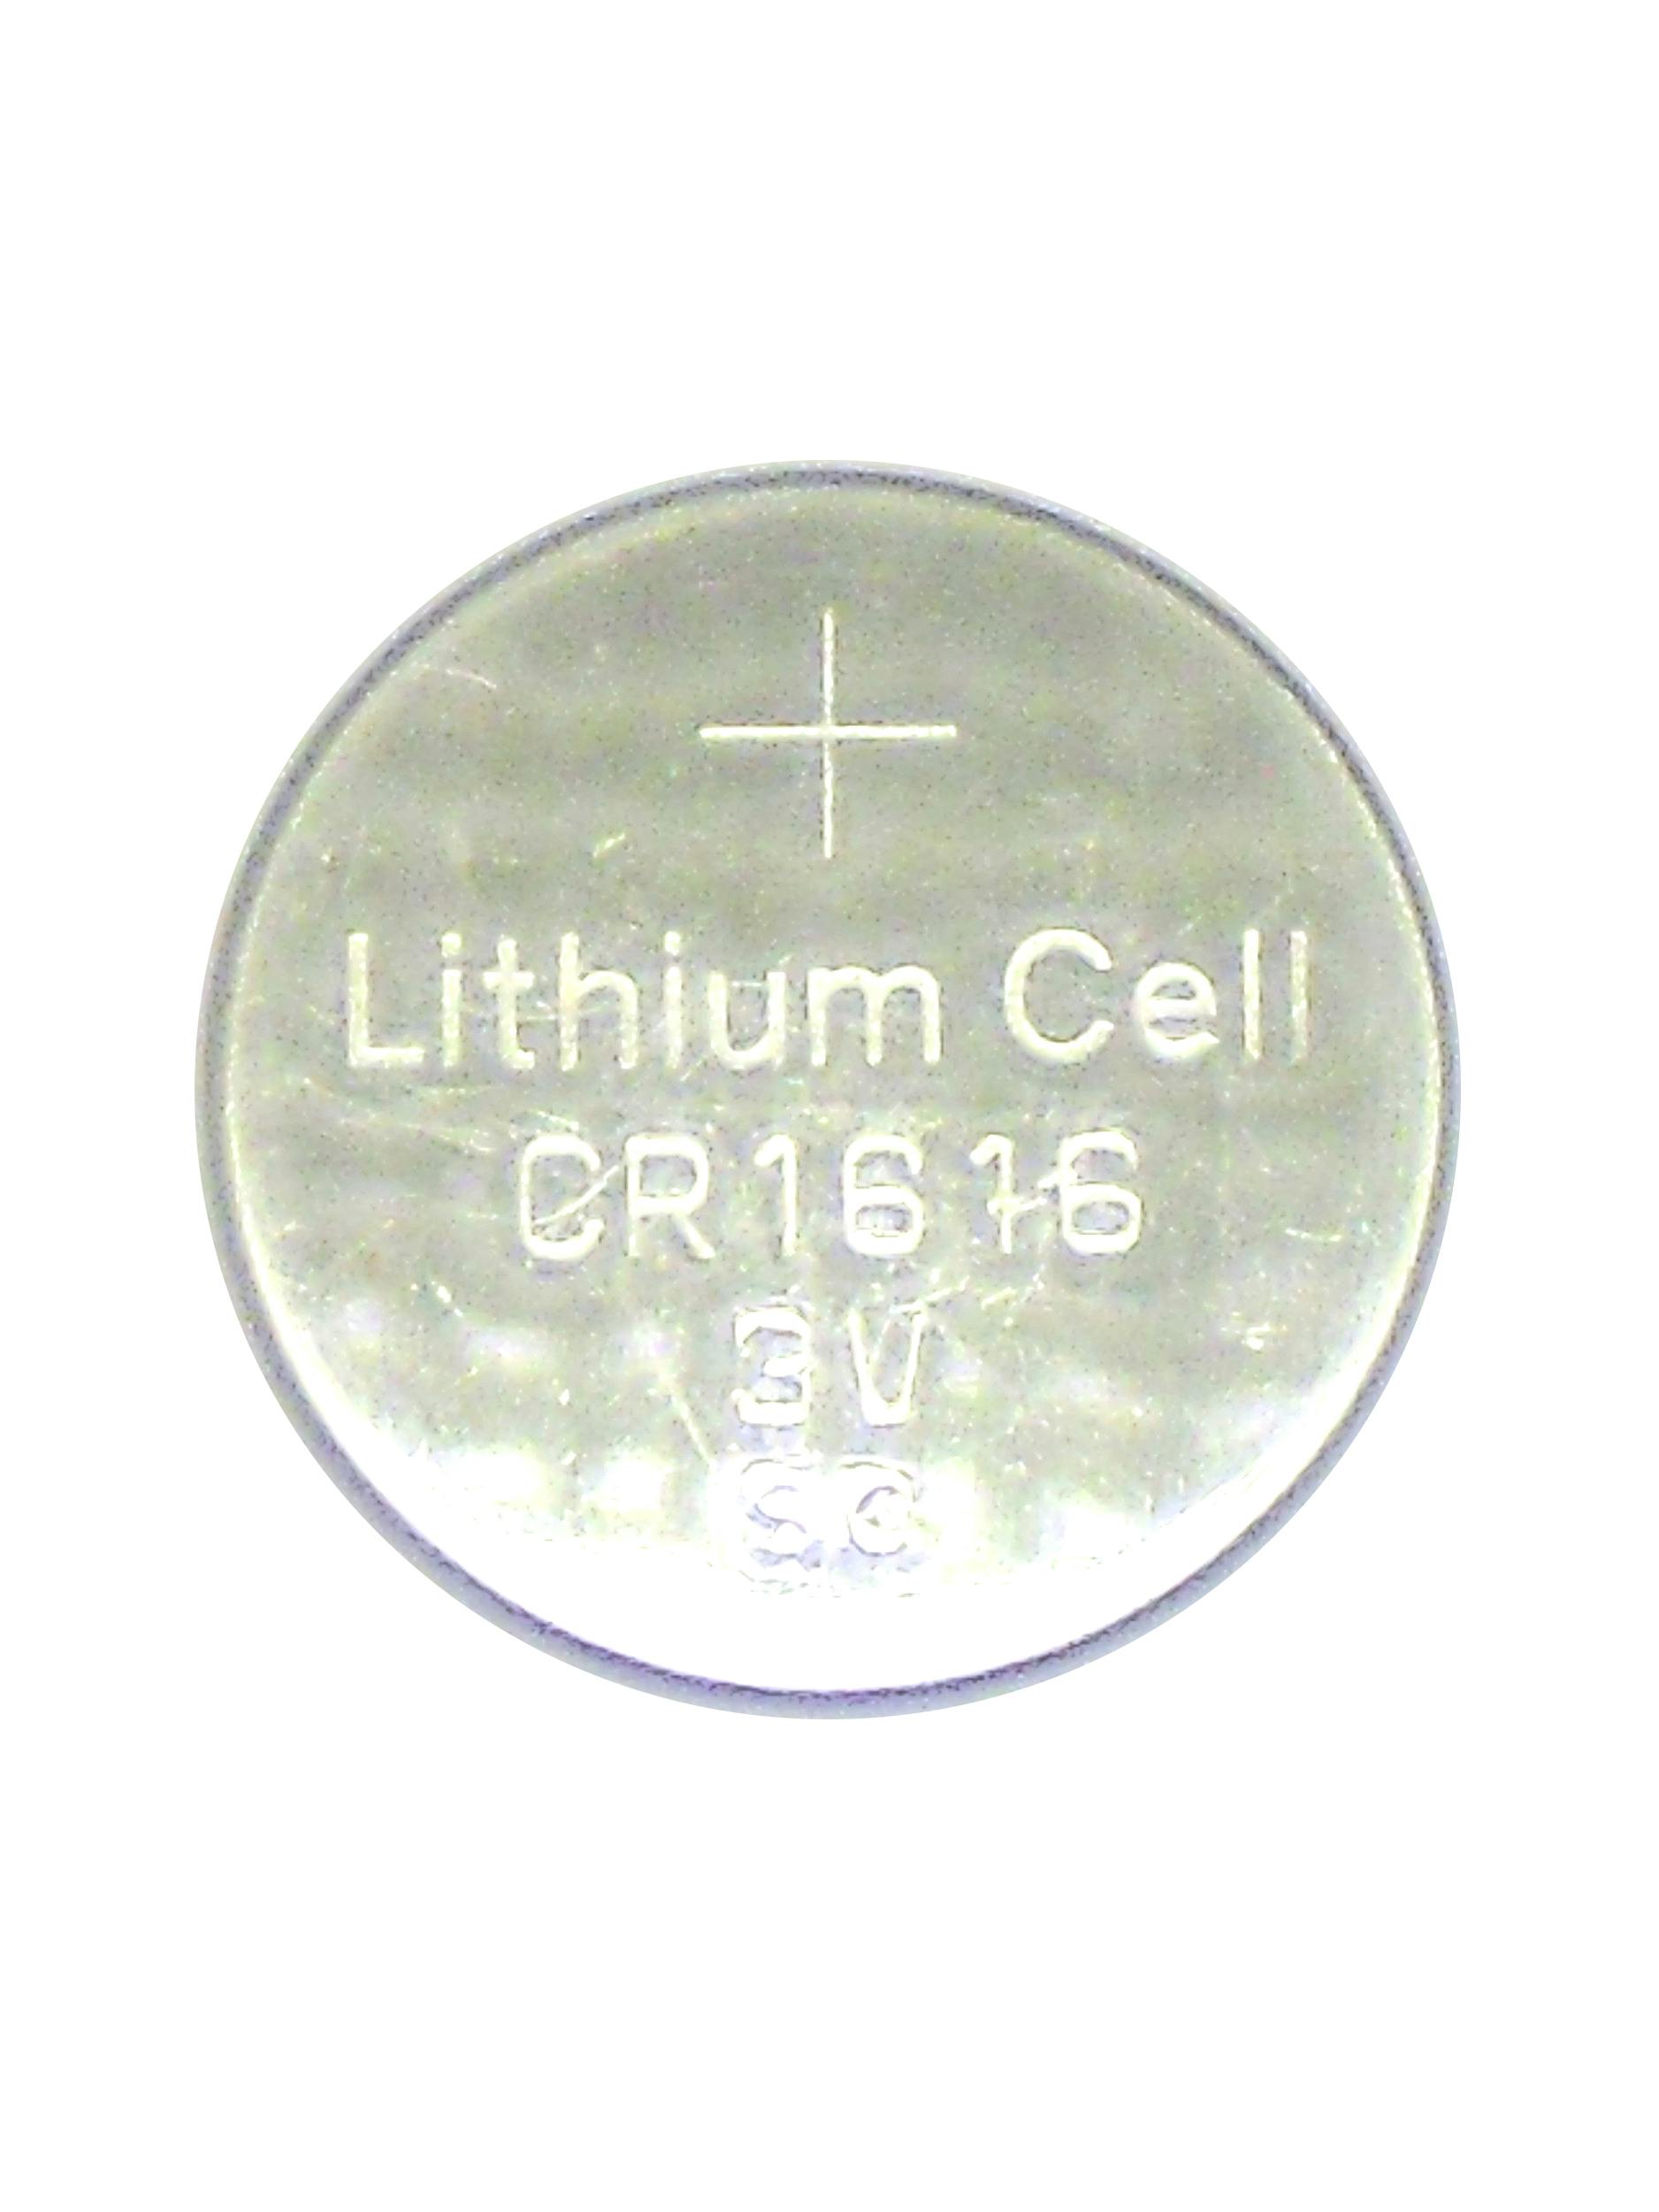 DealerShop - Lithium Coin Cell 3V - CR1616 - Key Fob - DealerShop